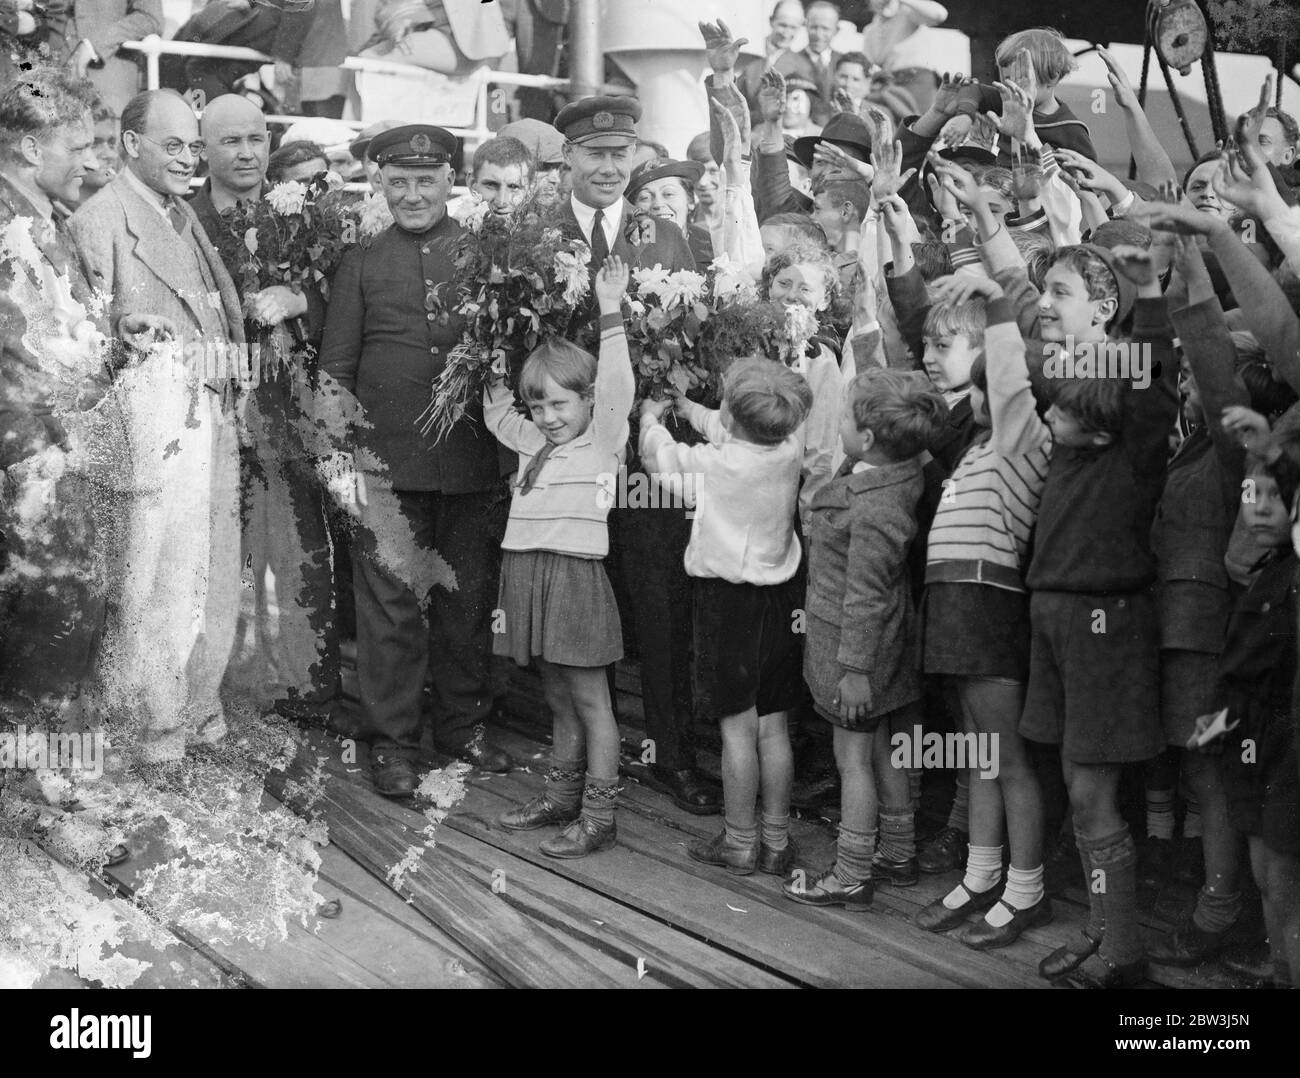 Der Stalingrad erste Frachter, der eine Reise durch den Polarkreis macht, kommt in London an. Kapitän R Melechov von Kindern der sowjetischen Kolonie in London bei der Ankunft in Surrey Docks begrüßt. 28. September 1935 Stockfoto